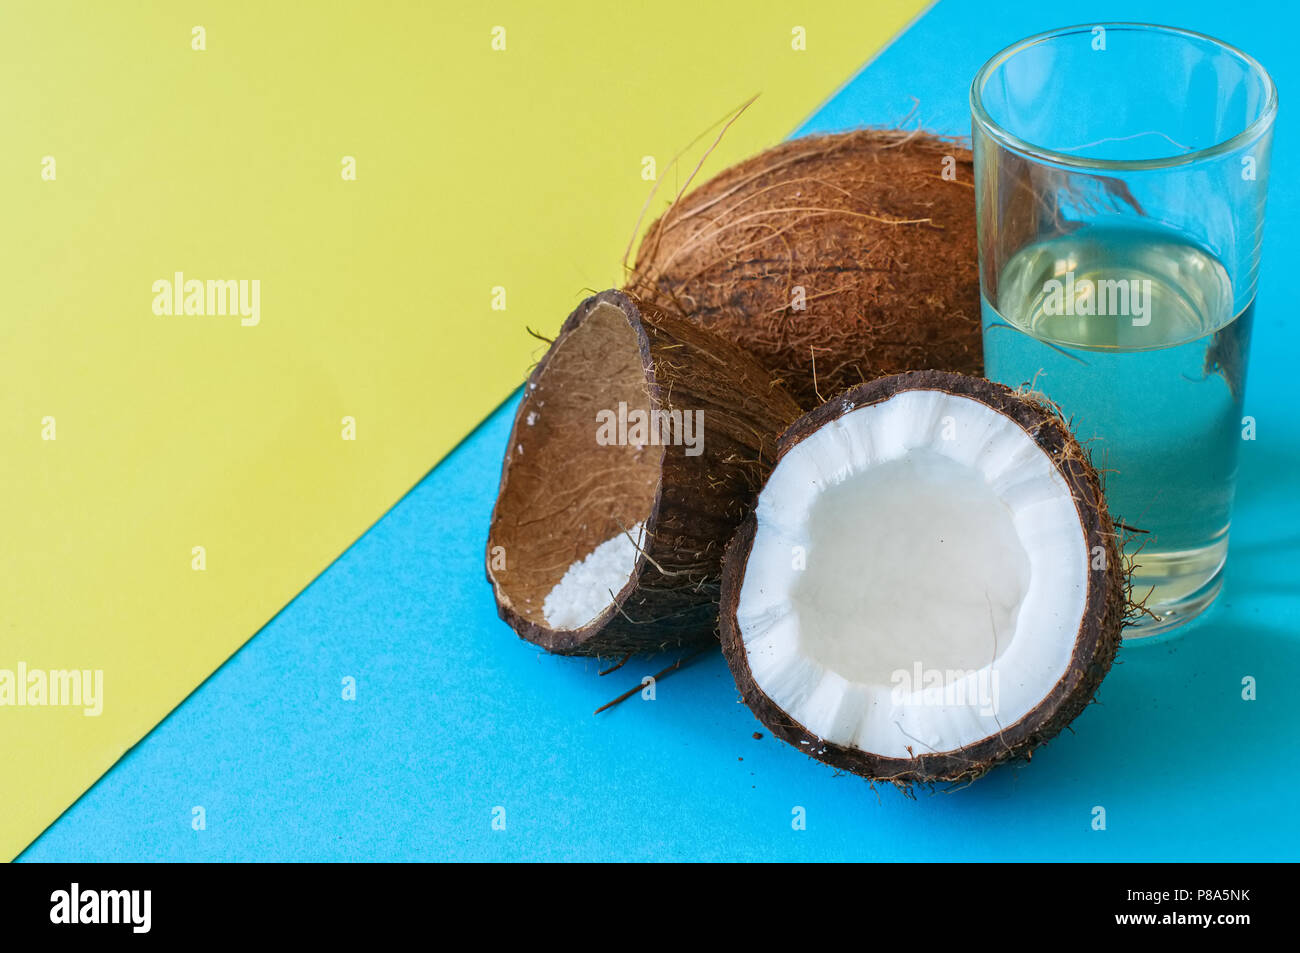 Kokosnuss Wasser, ganze Kokosnüsse auf einer Duo Tone Hintergrund. Kokosnuss Produkte Konzept. Stockfoto